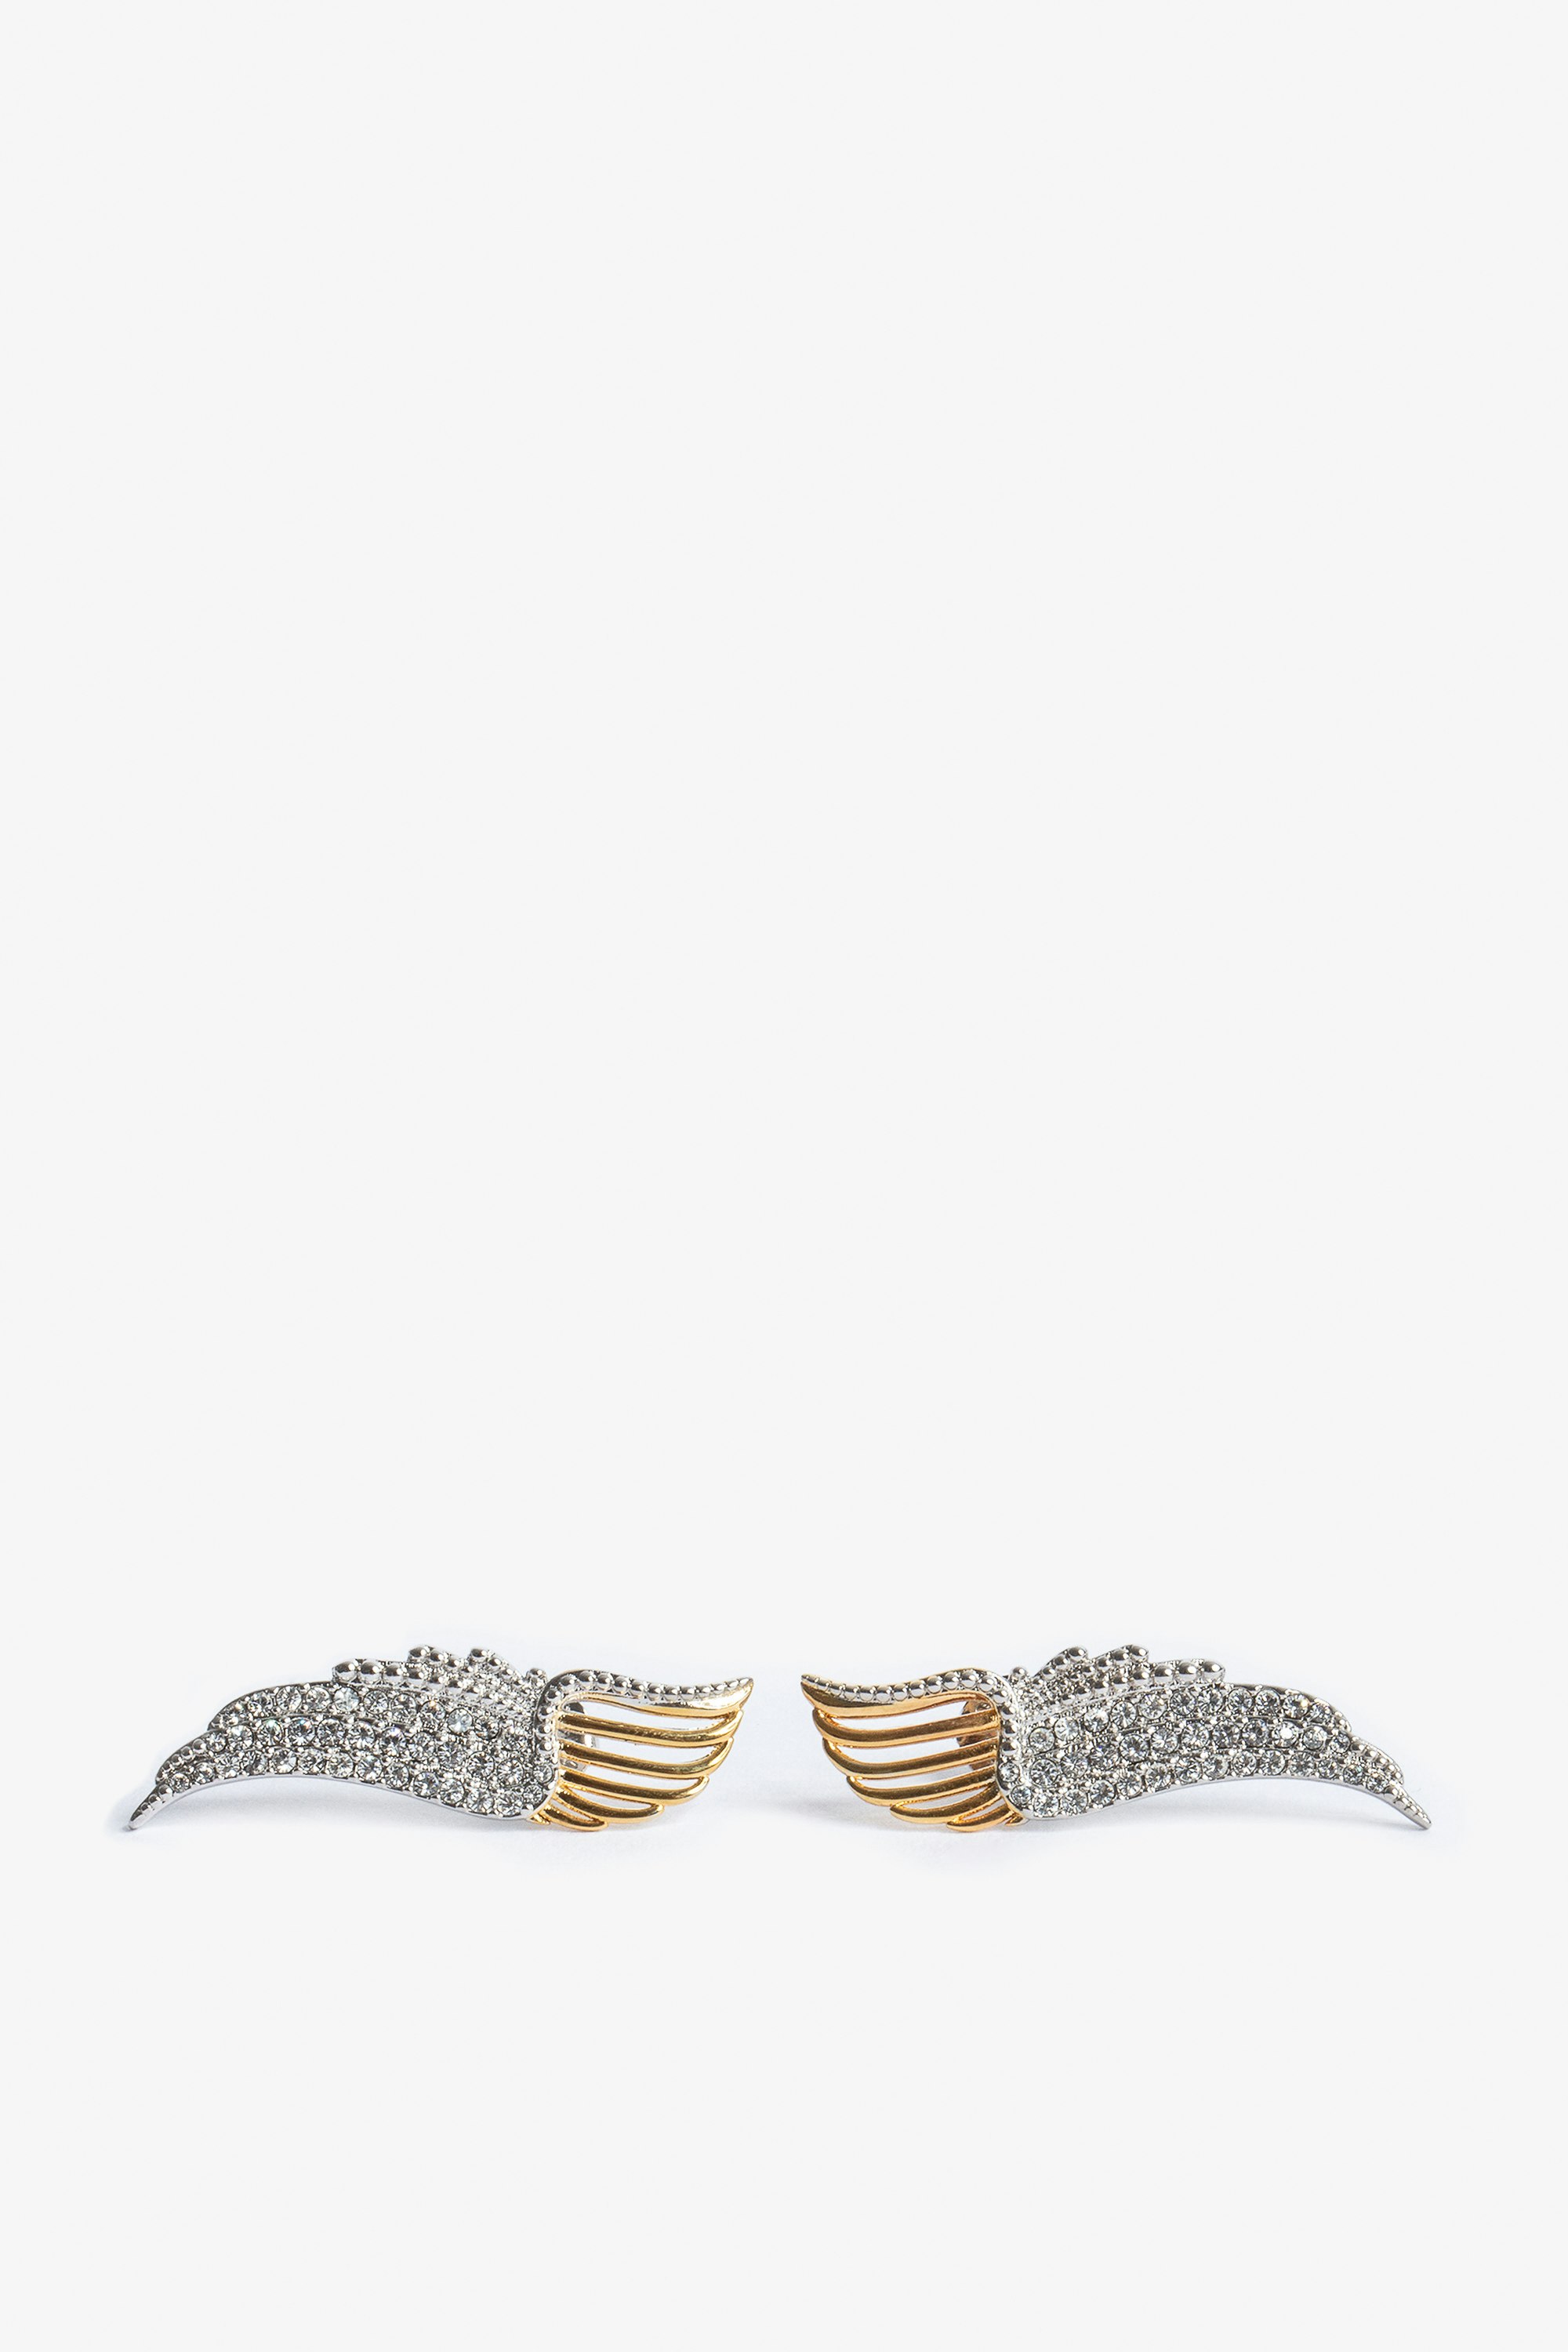 Pendientes Rock Over - Pendientes de mujer en forma de alas de metal dorado con cristales engastados.